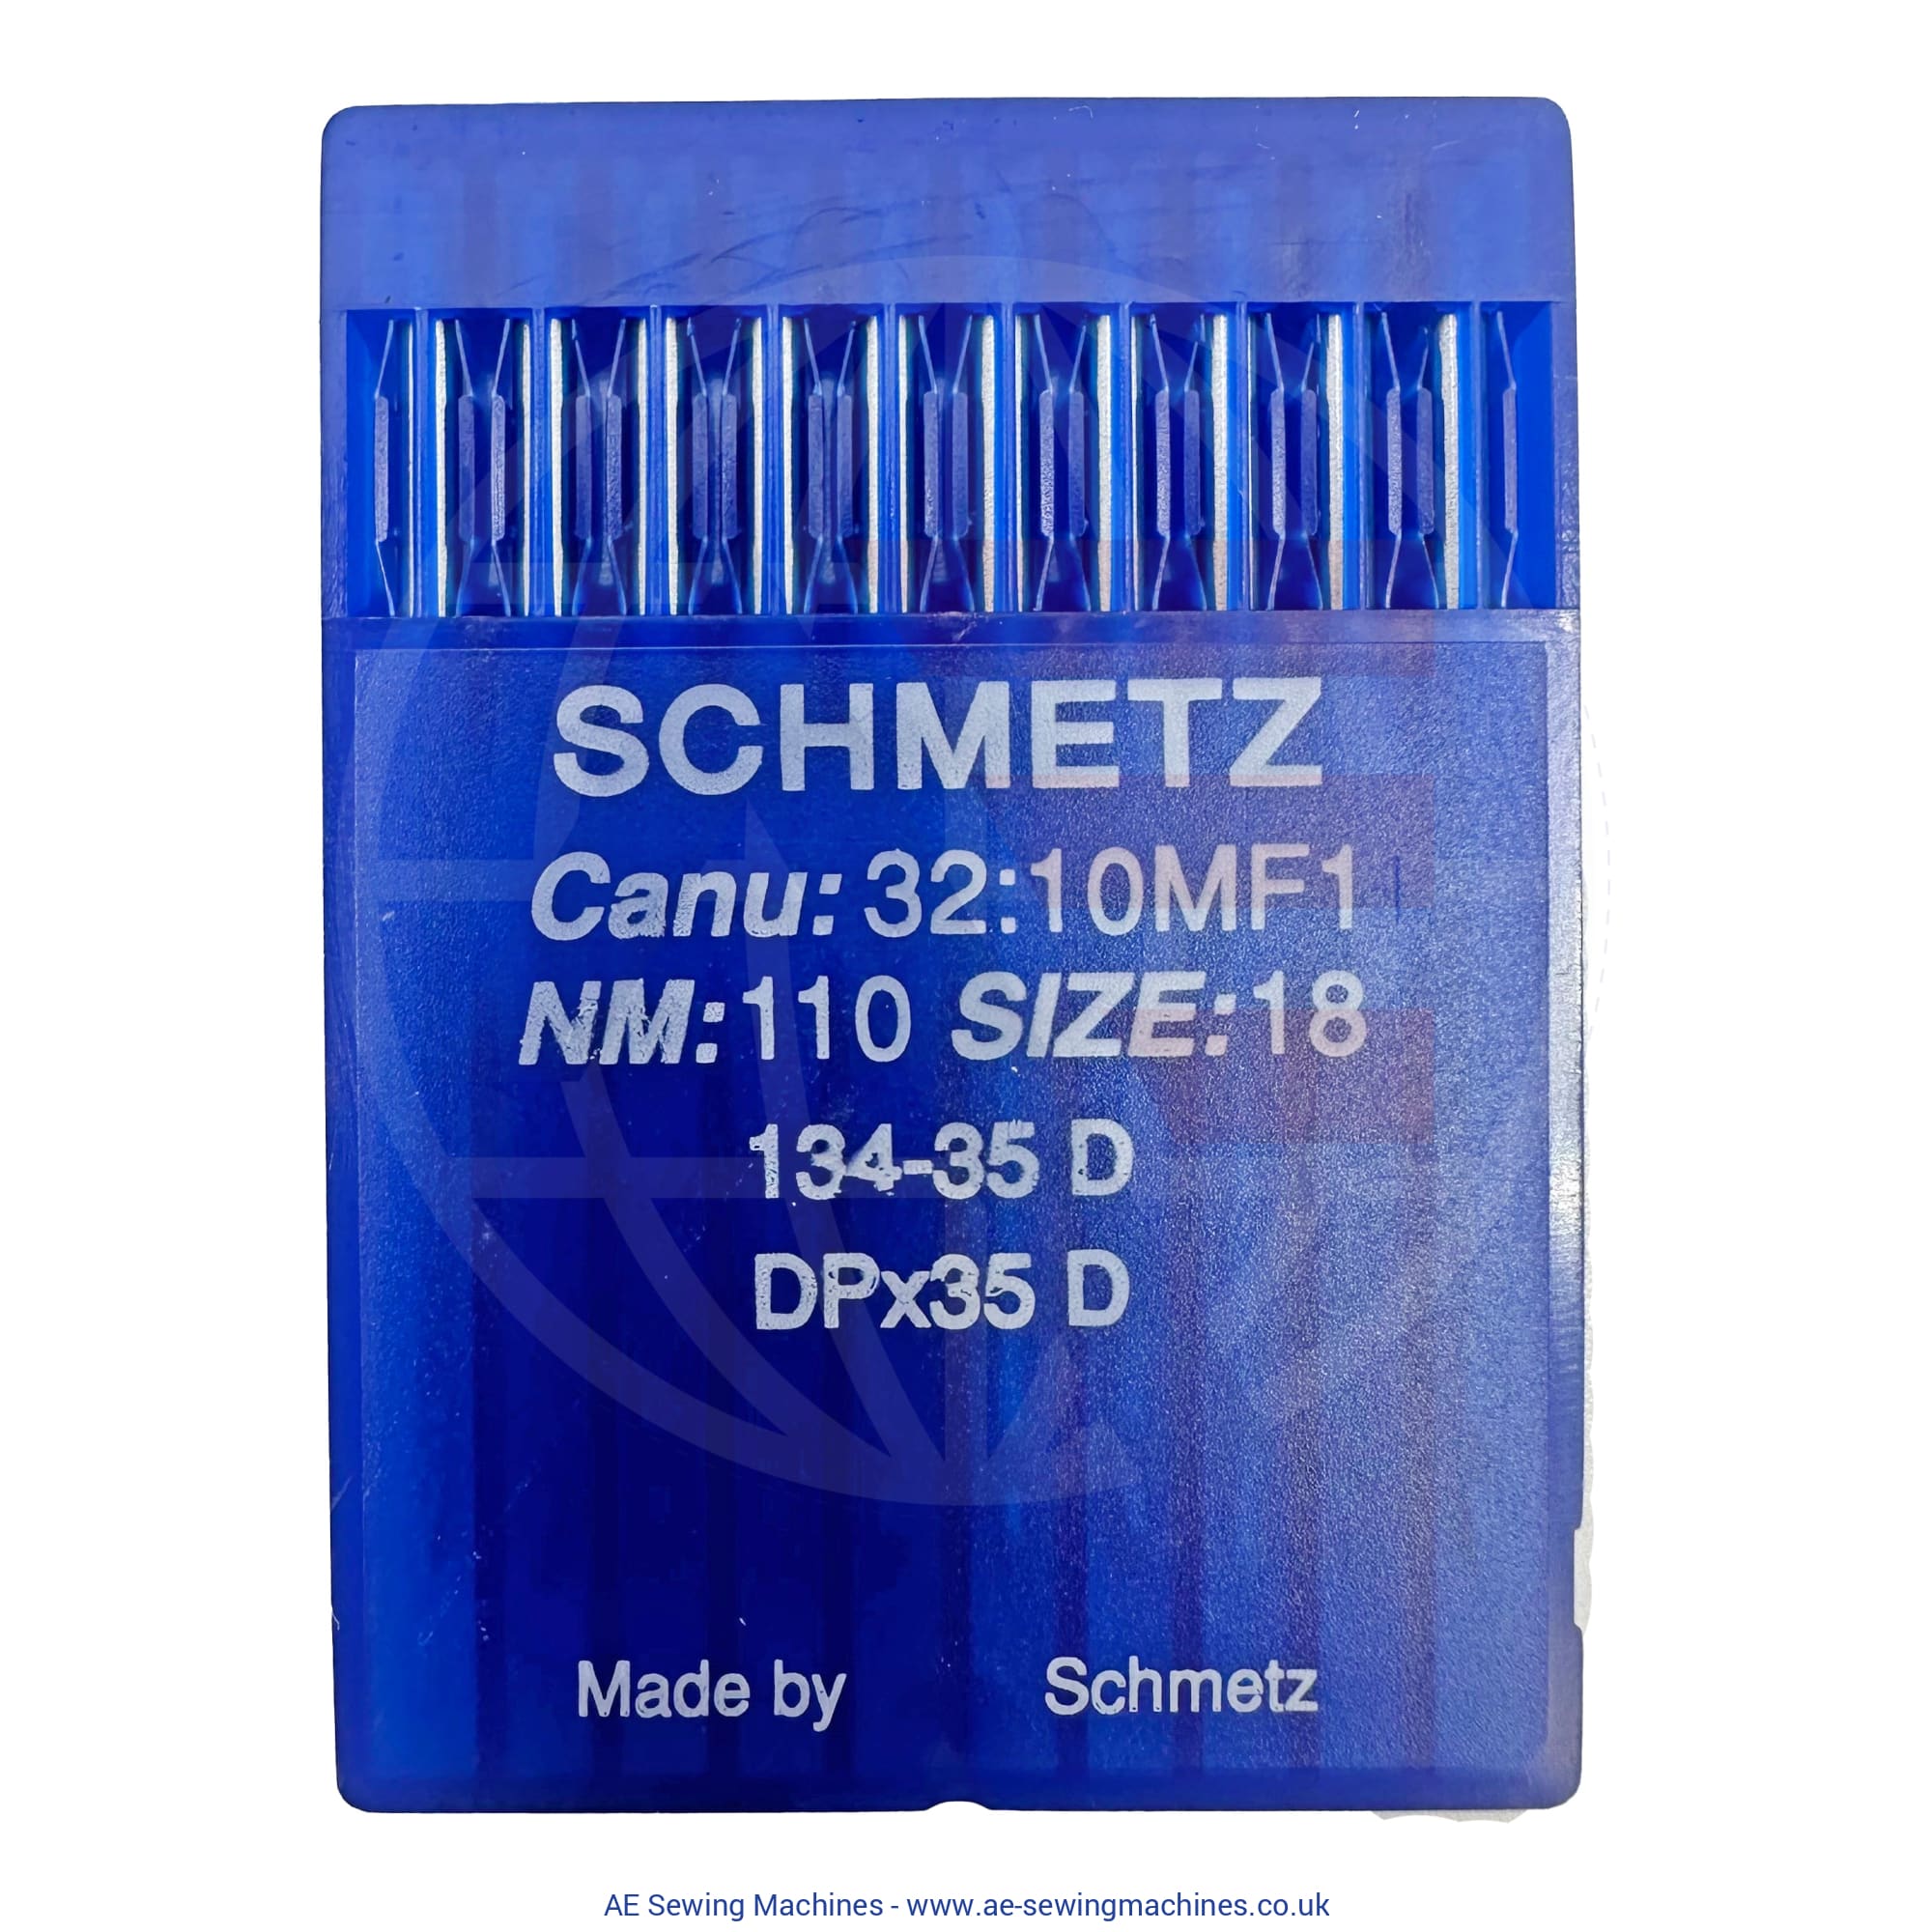 Schmetz 134-35D Triangular Point Needles 110 Sewing Machine